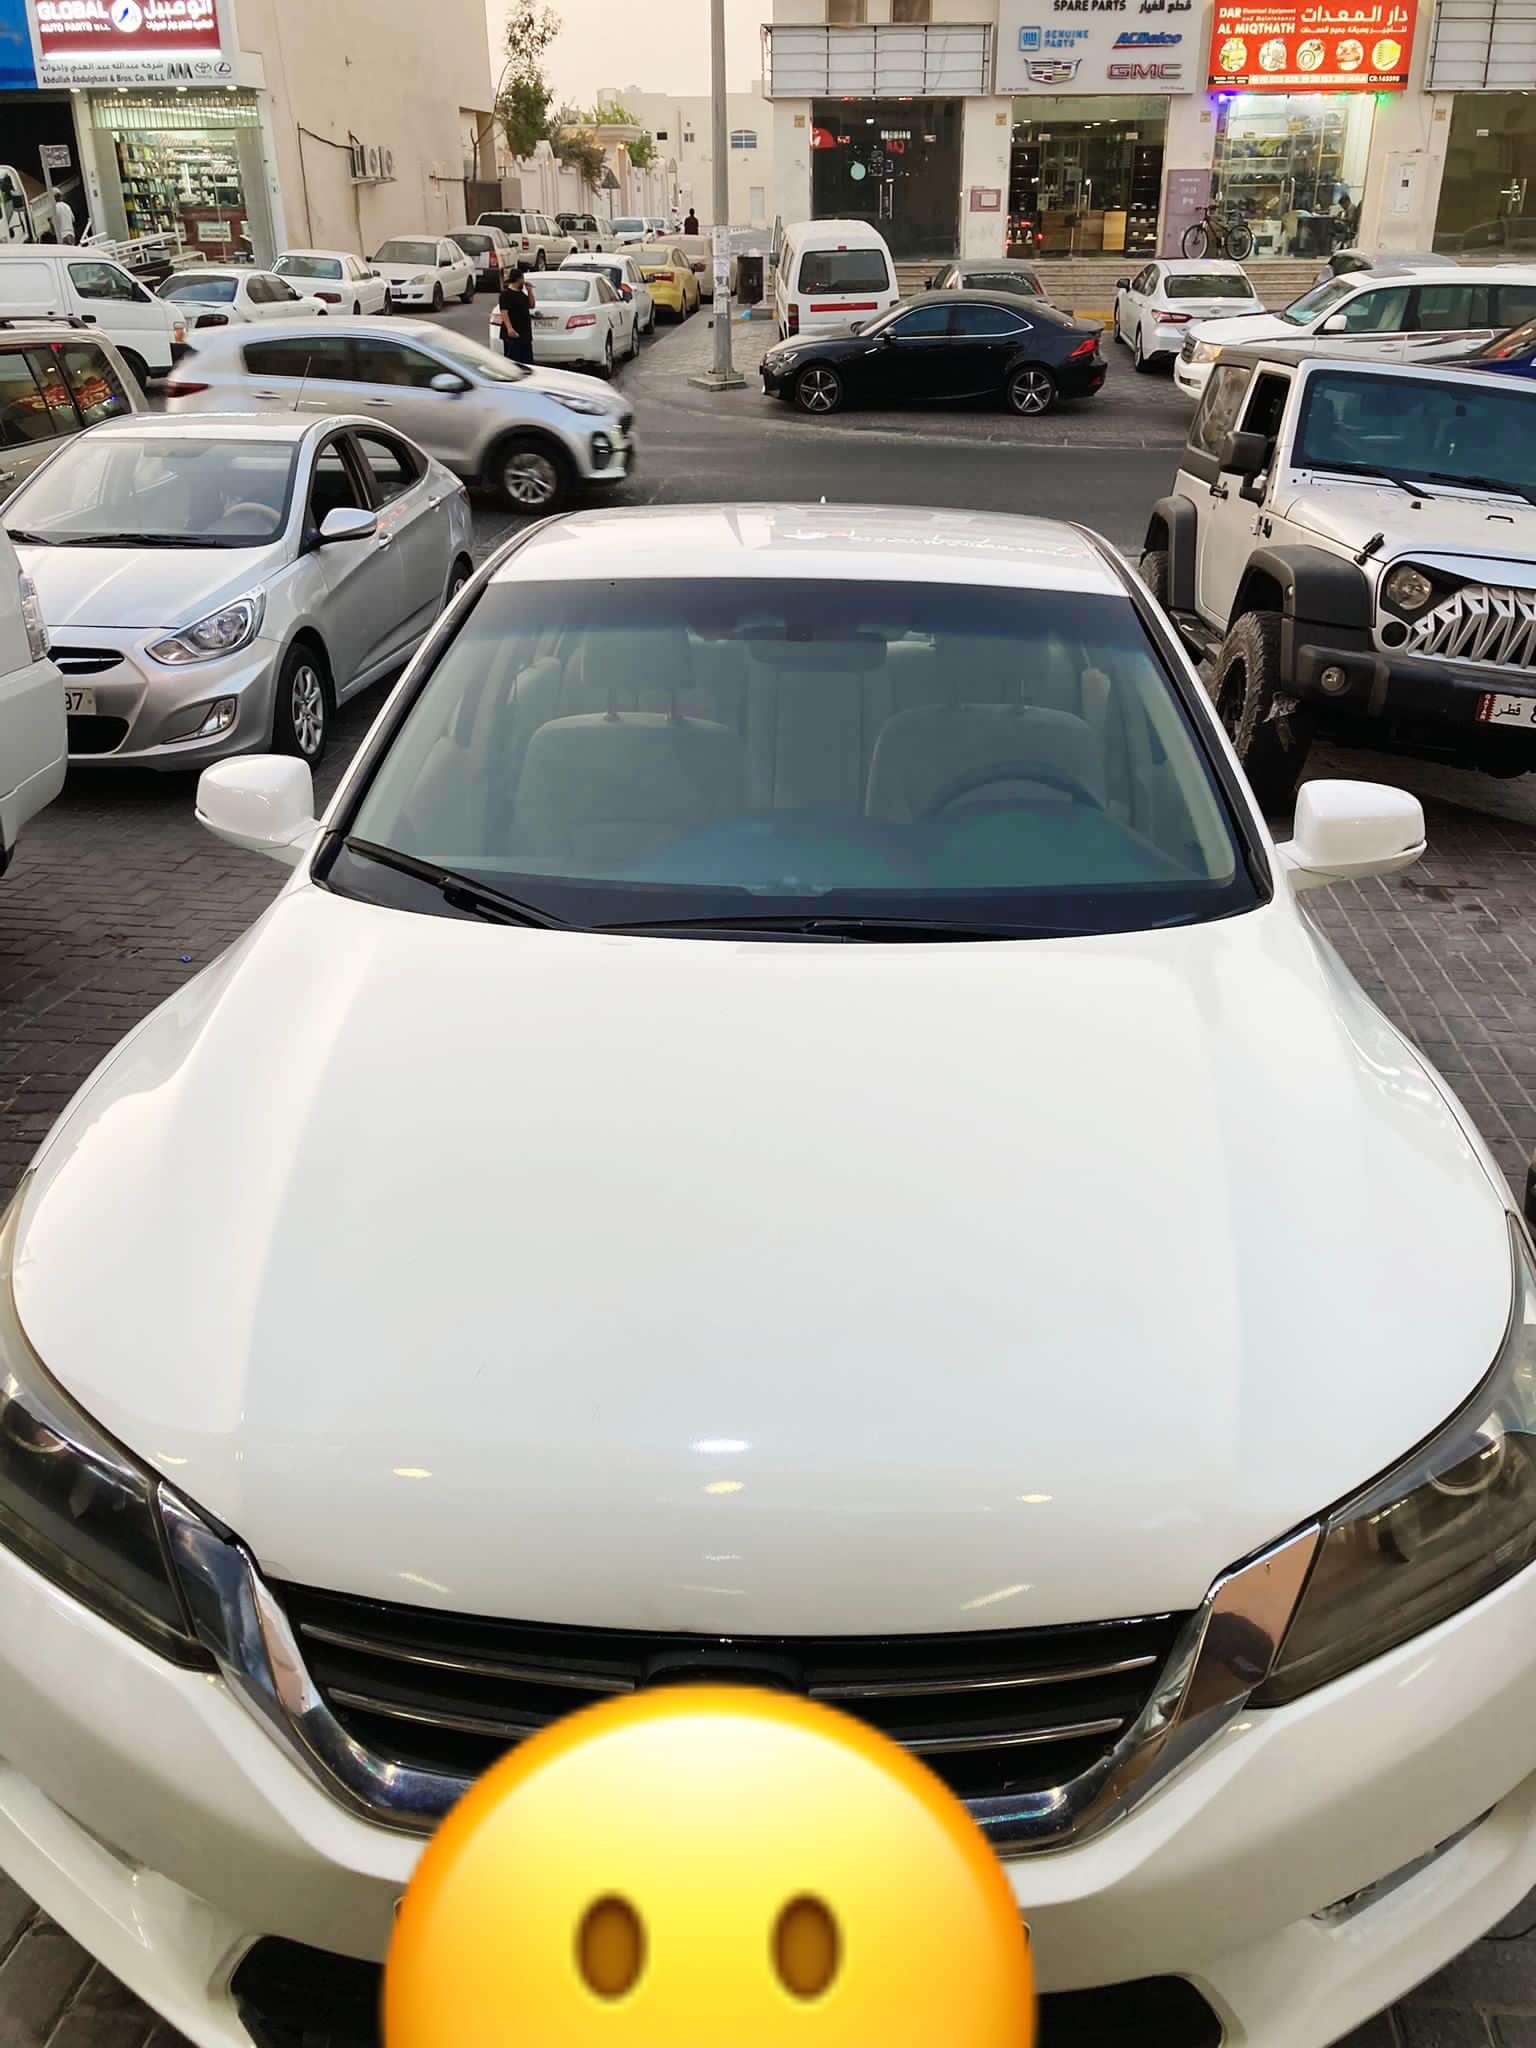 سيارات هوندا مستعملة للبيع في قطر الدوحة ارخص سيارات هوندا للبيع